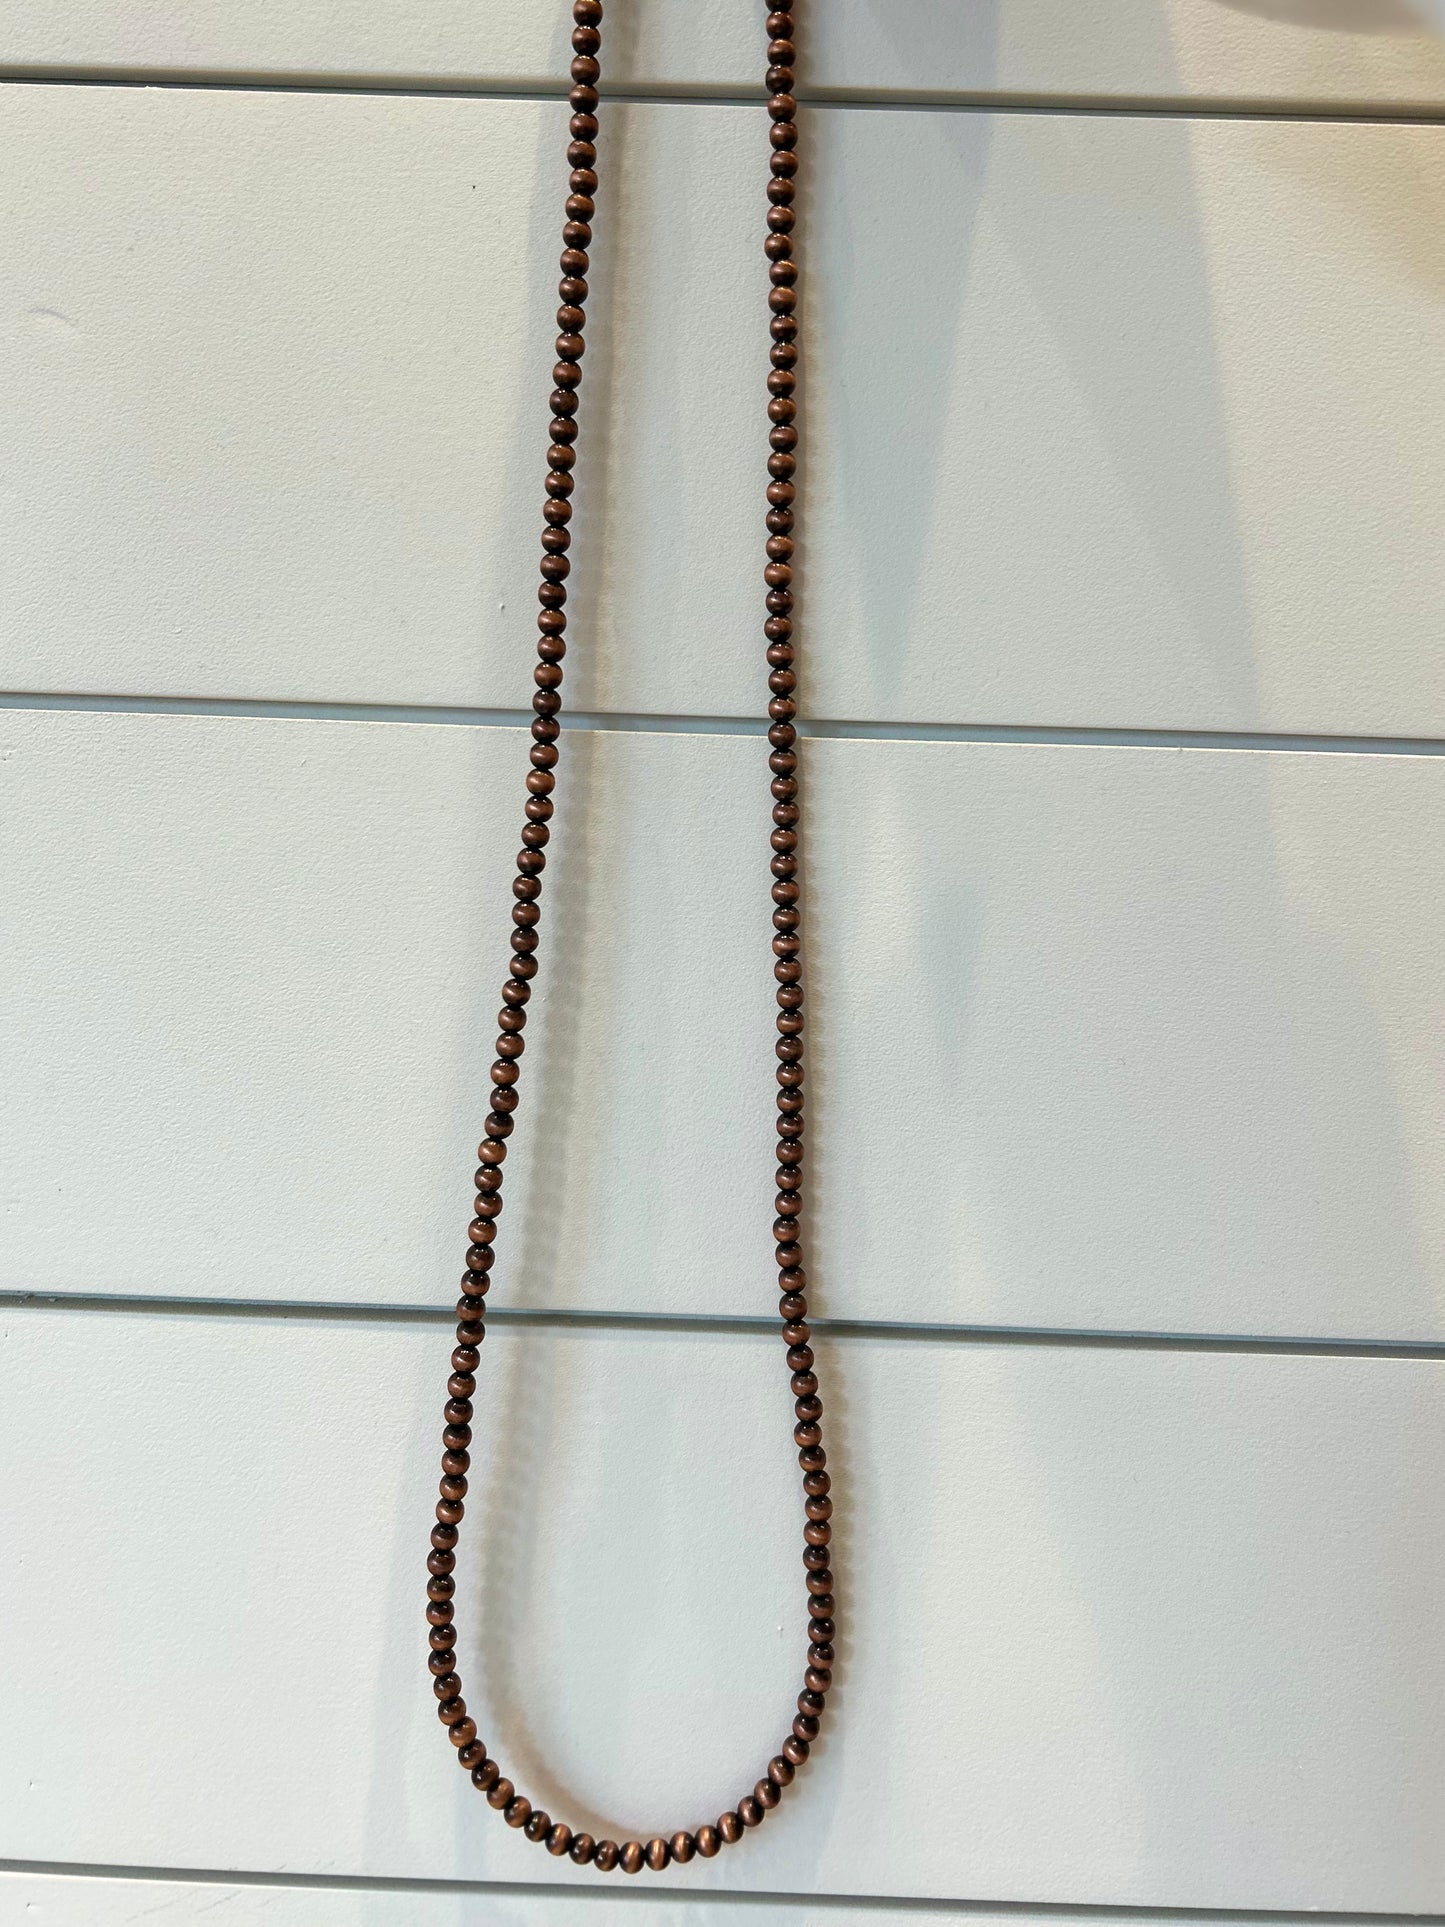 The Kouvr Necklace